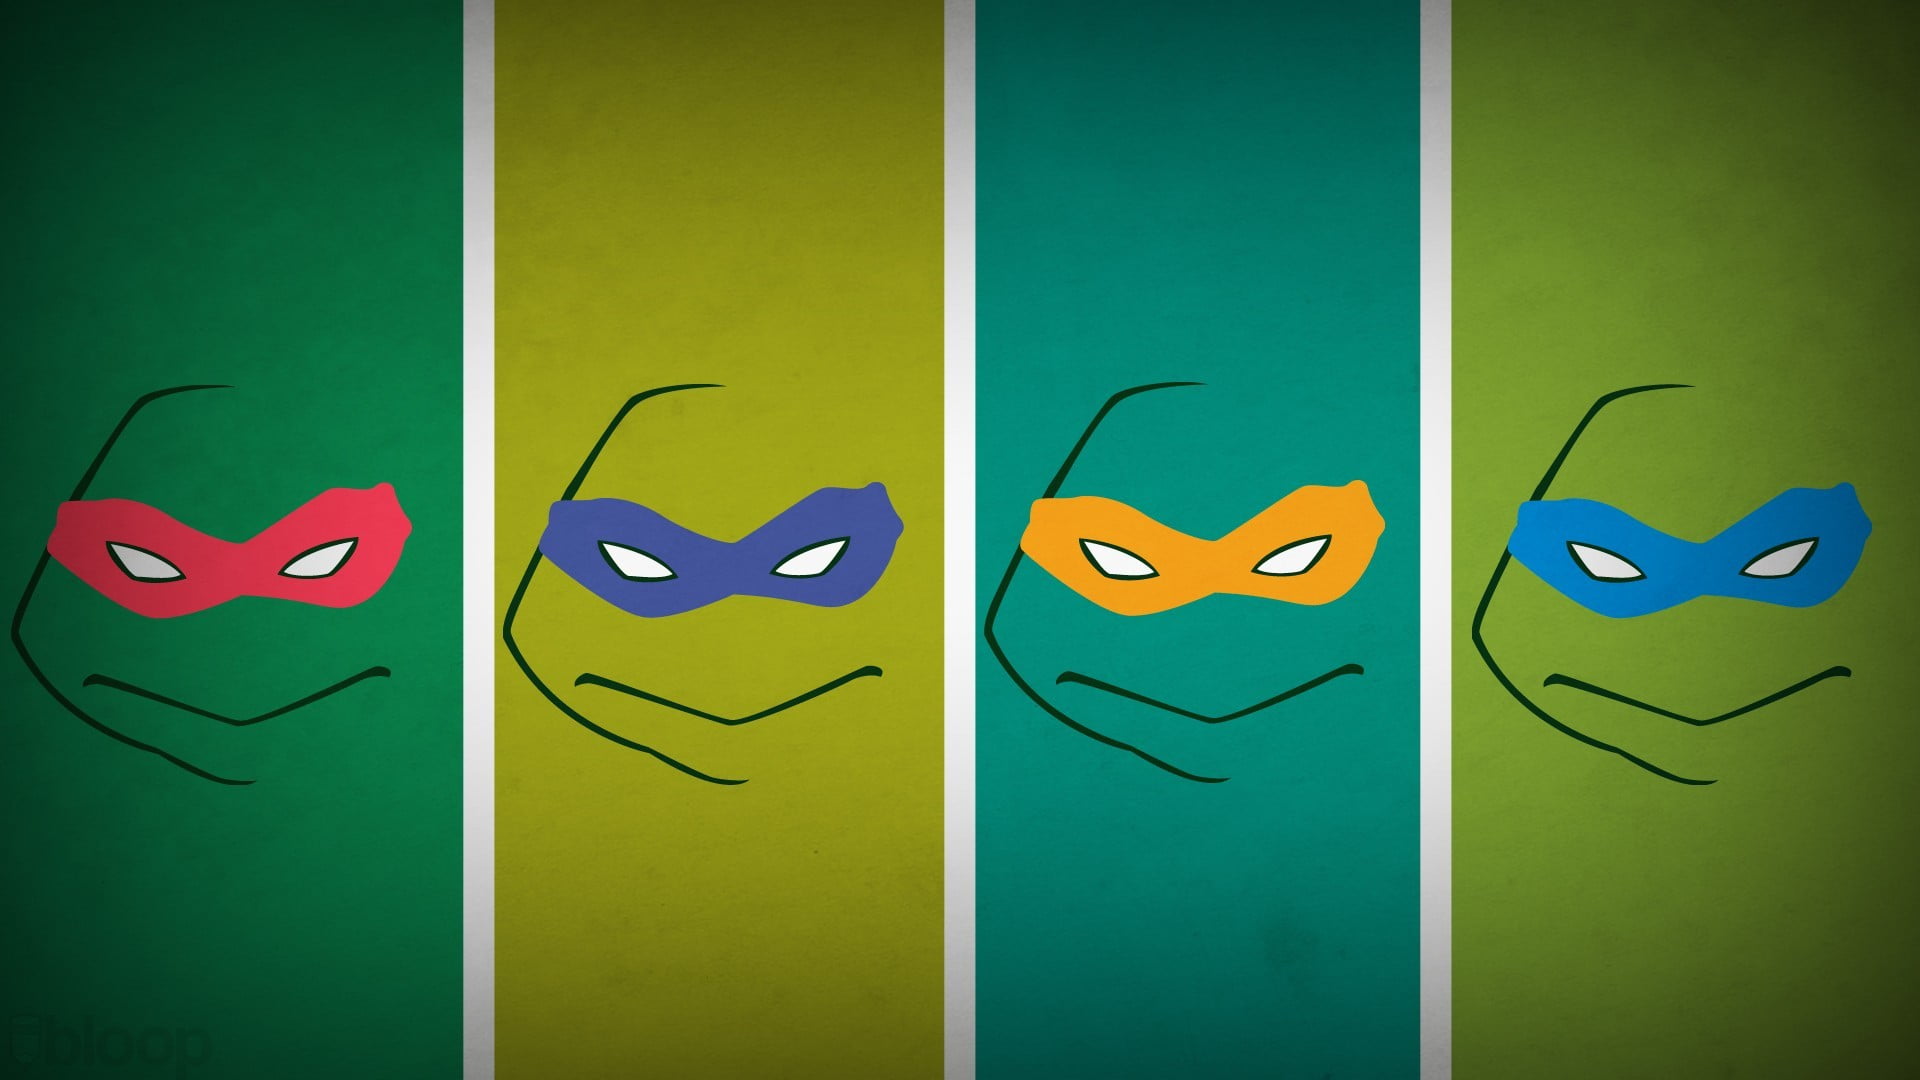 Teenage Mutant Ninja Turtles, Teenage Mutant Ninja Turtles, hero, Blo0p, panels